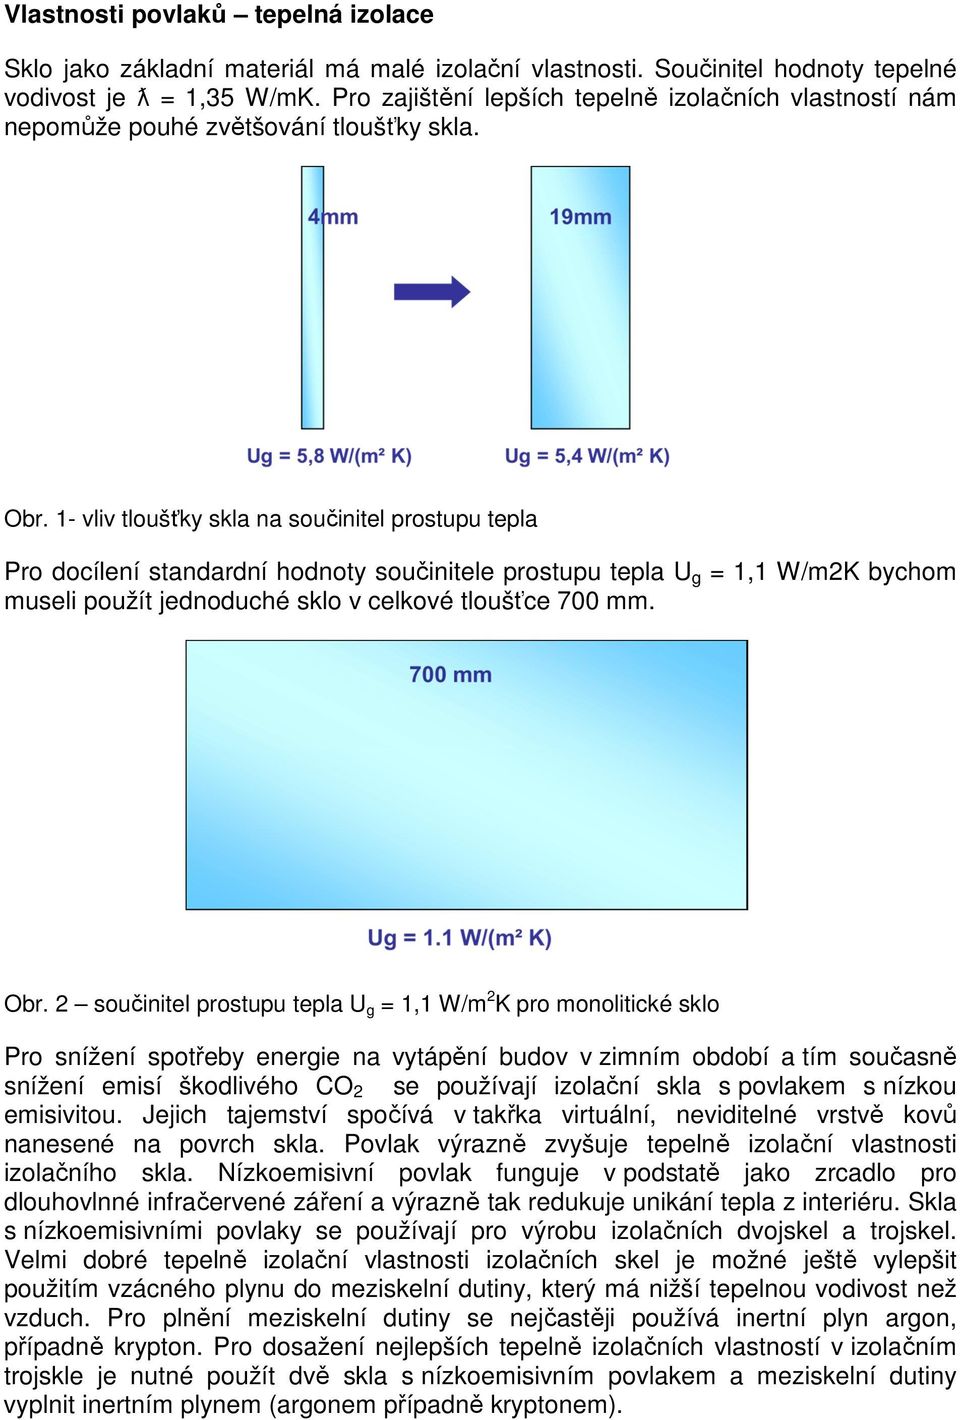 1- vliv tloušťky skla na součinitel prostupu tepla Pro docílení standardní hodnoty součinitele prostupu tepla U g = 1,1 W/m2K bychom museli použít jednoduché sklo v celkové tloušťce 700 mm. Obr.